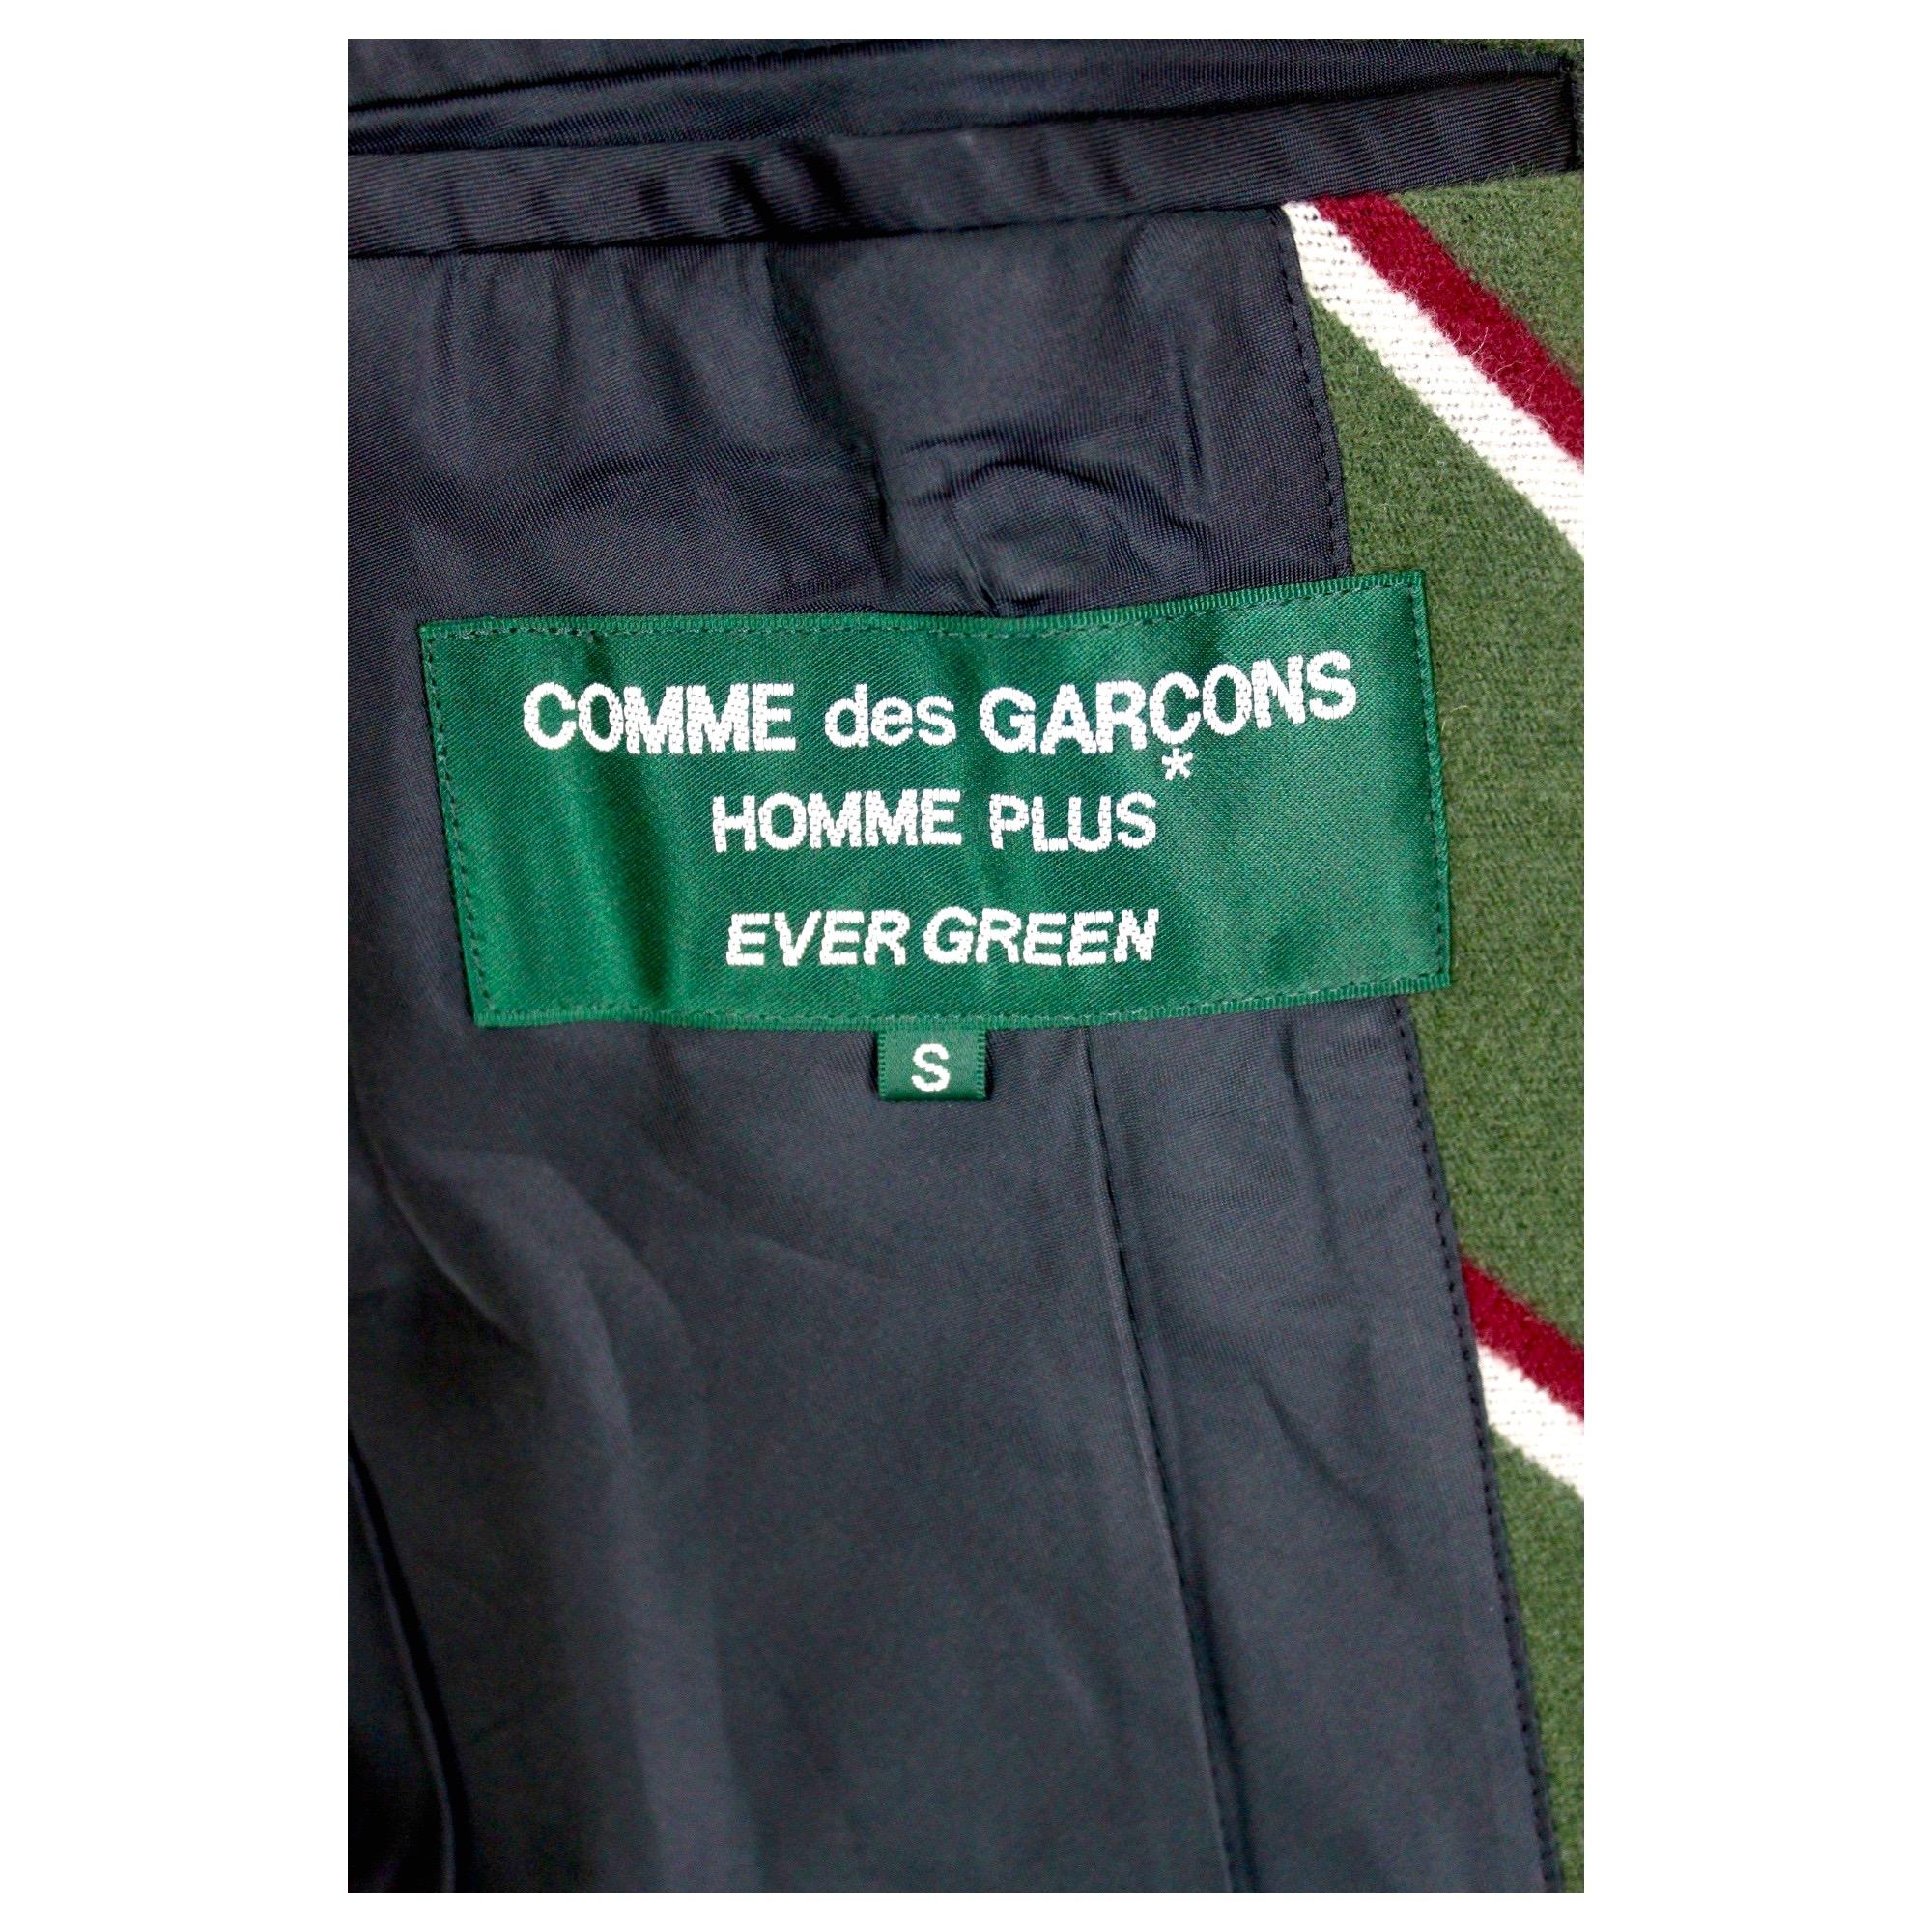 Comme des Garcons Homme Plus Evergreen Jacket